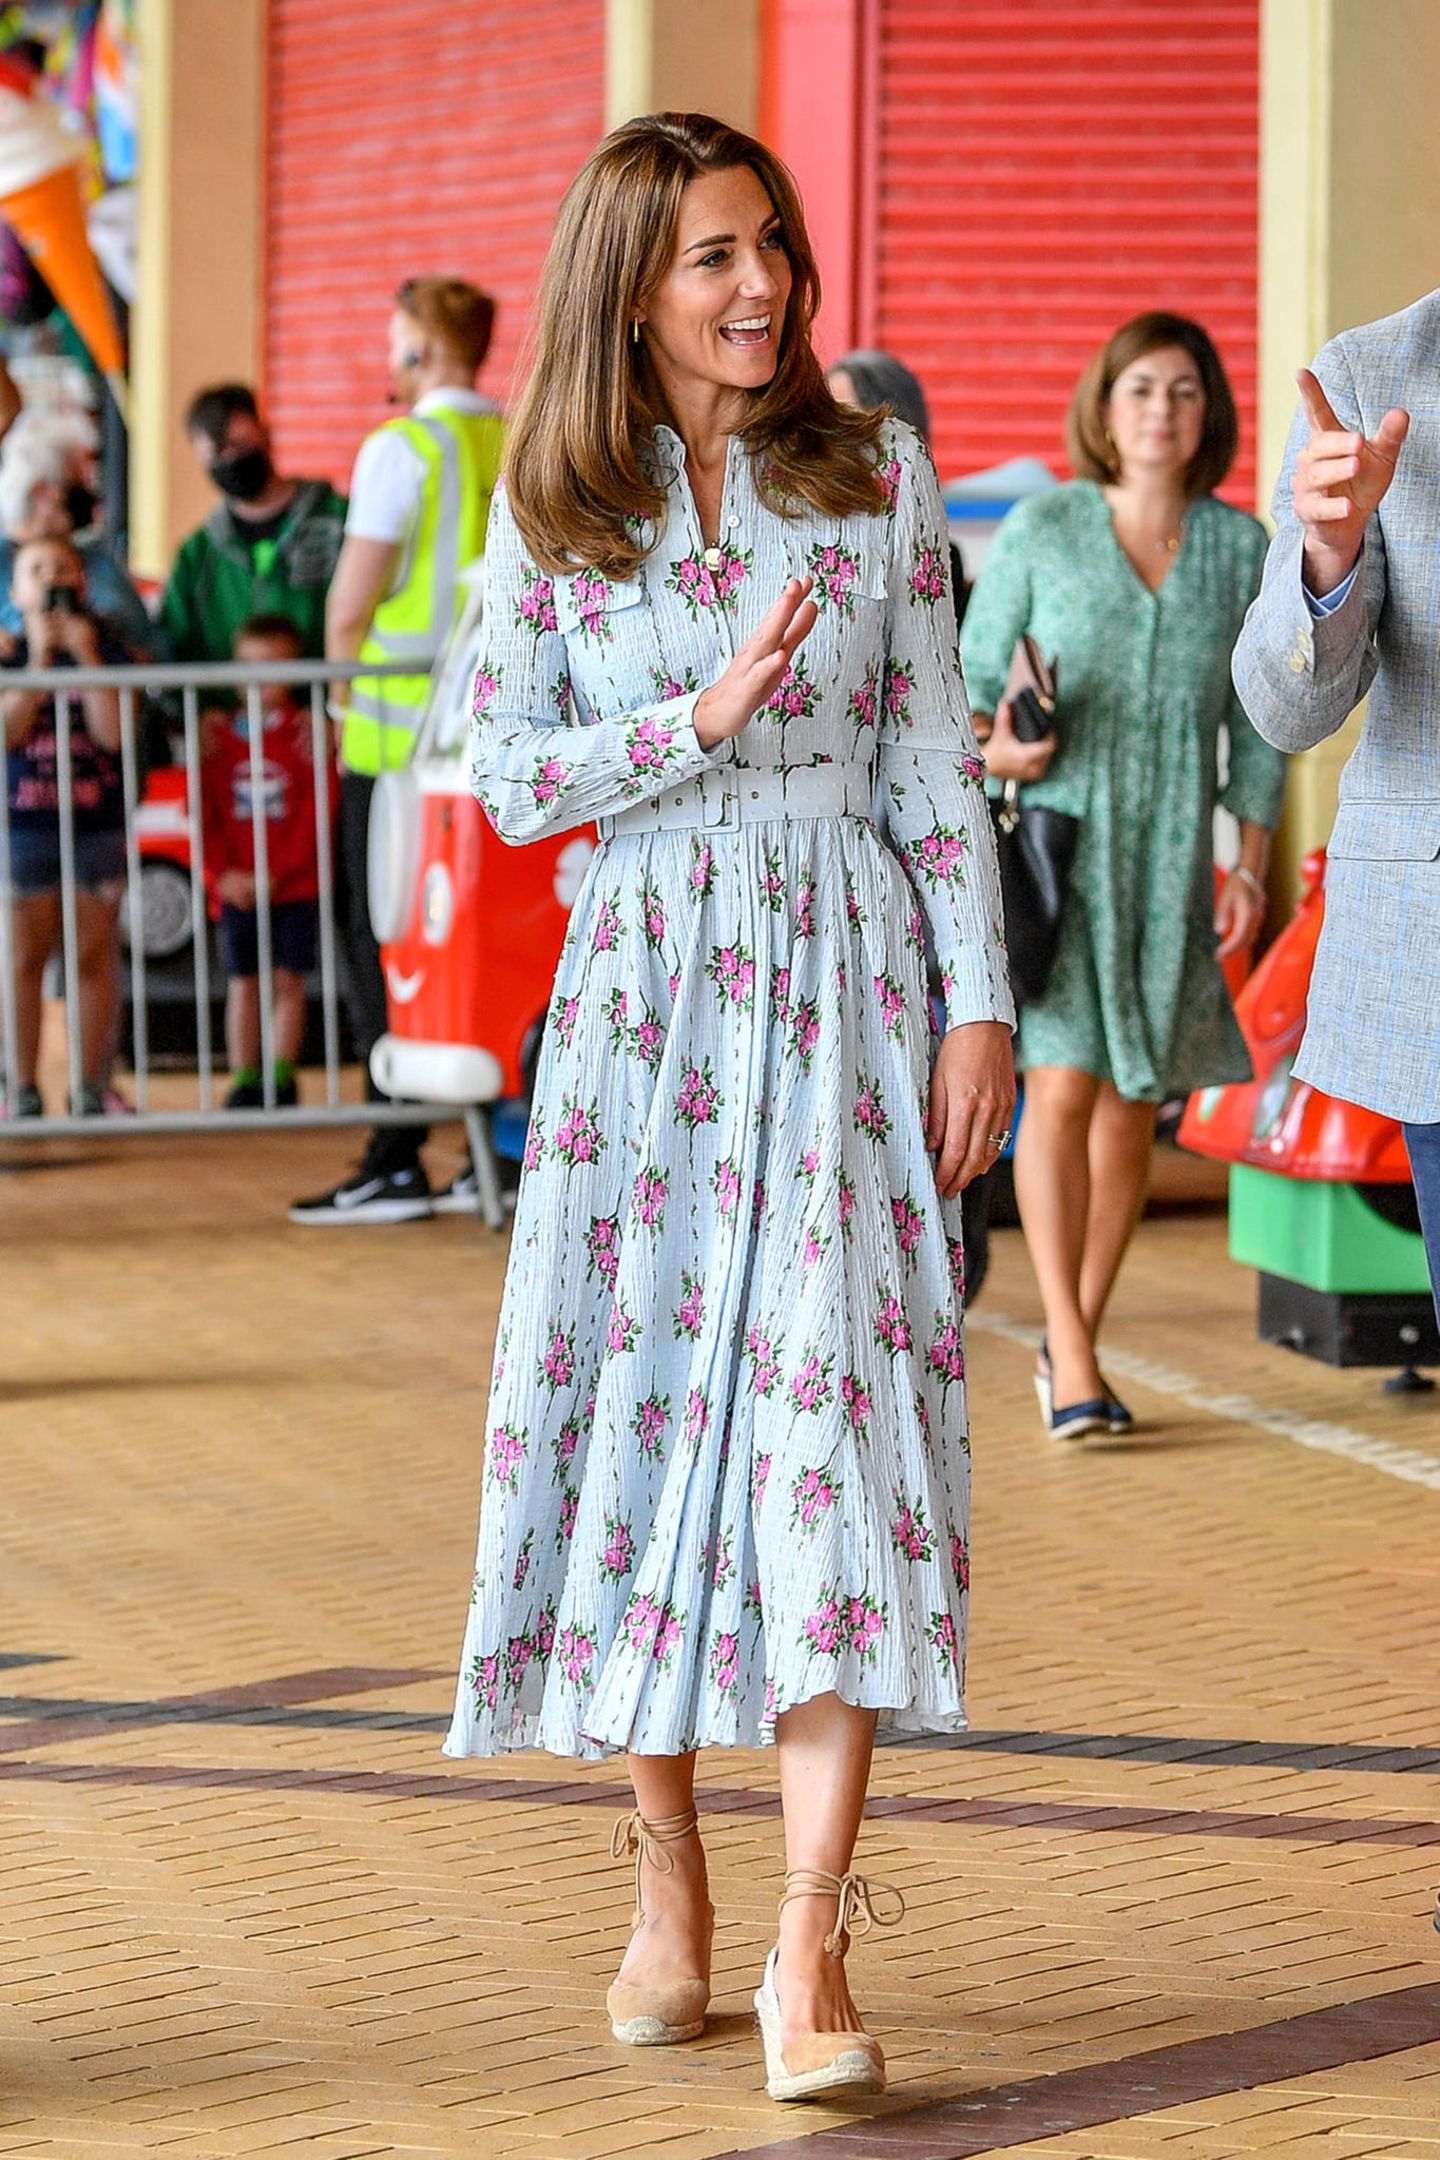 Florale Kleider sind die It-Pieces der Royals, um Lässigkeit und Eleganz zu vereinen. Herzogin Catherine wählt hier ein tailliertes Midi-Dress von Emilia Wickstead.